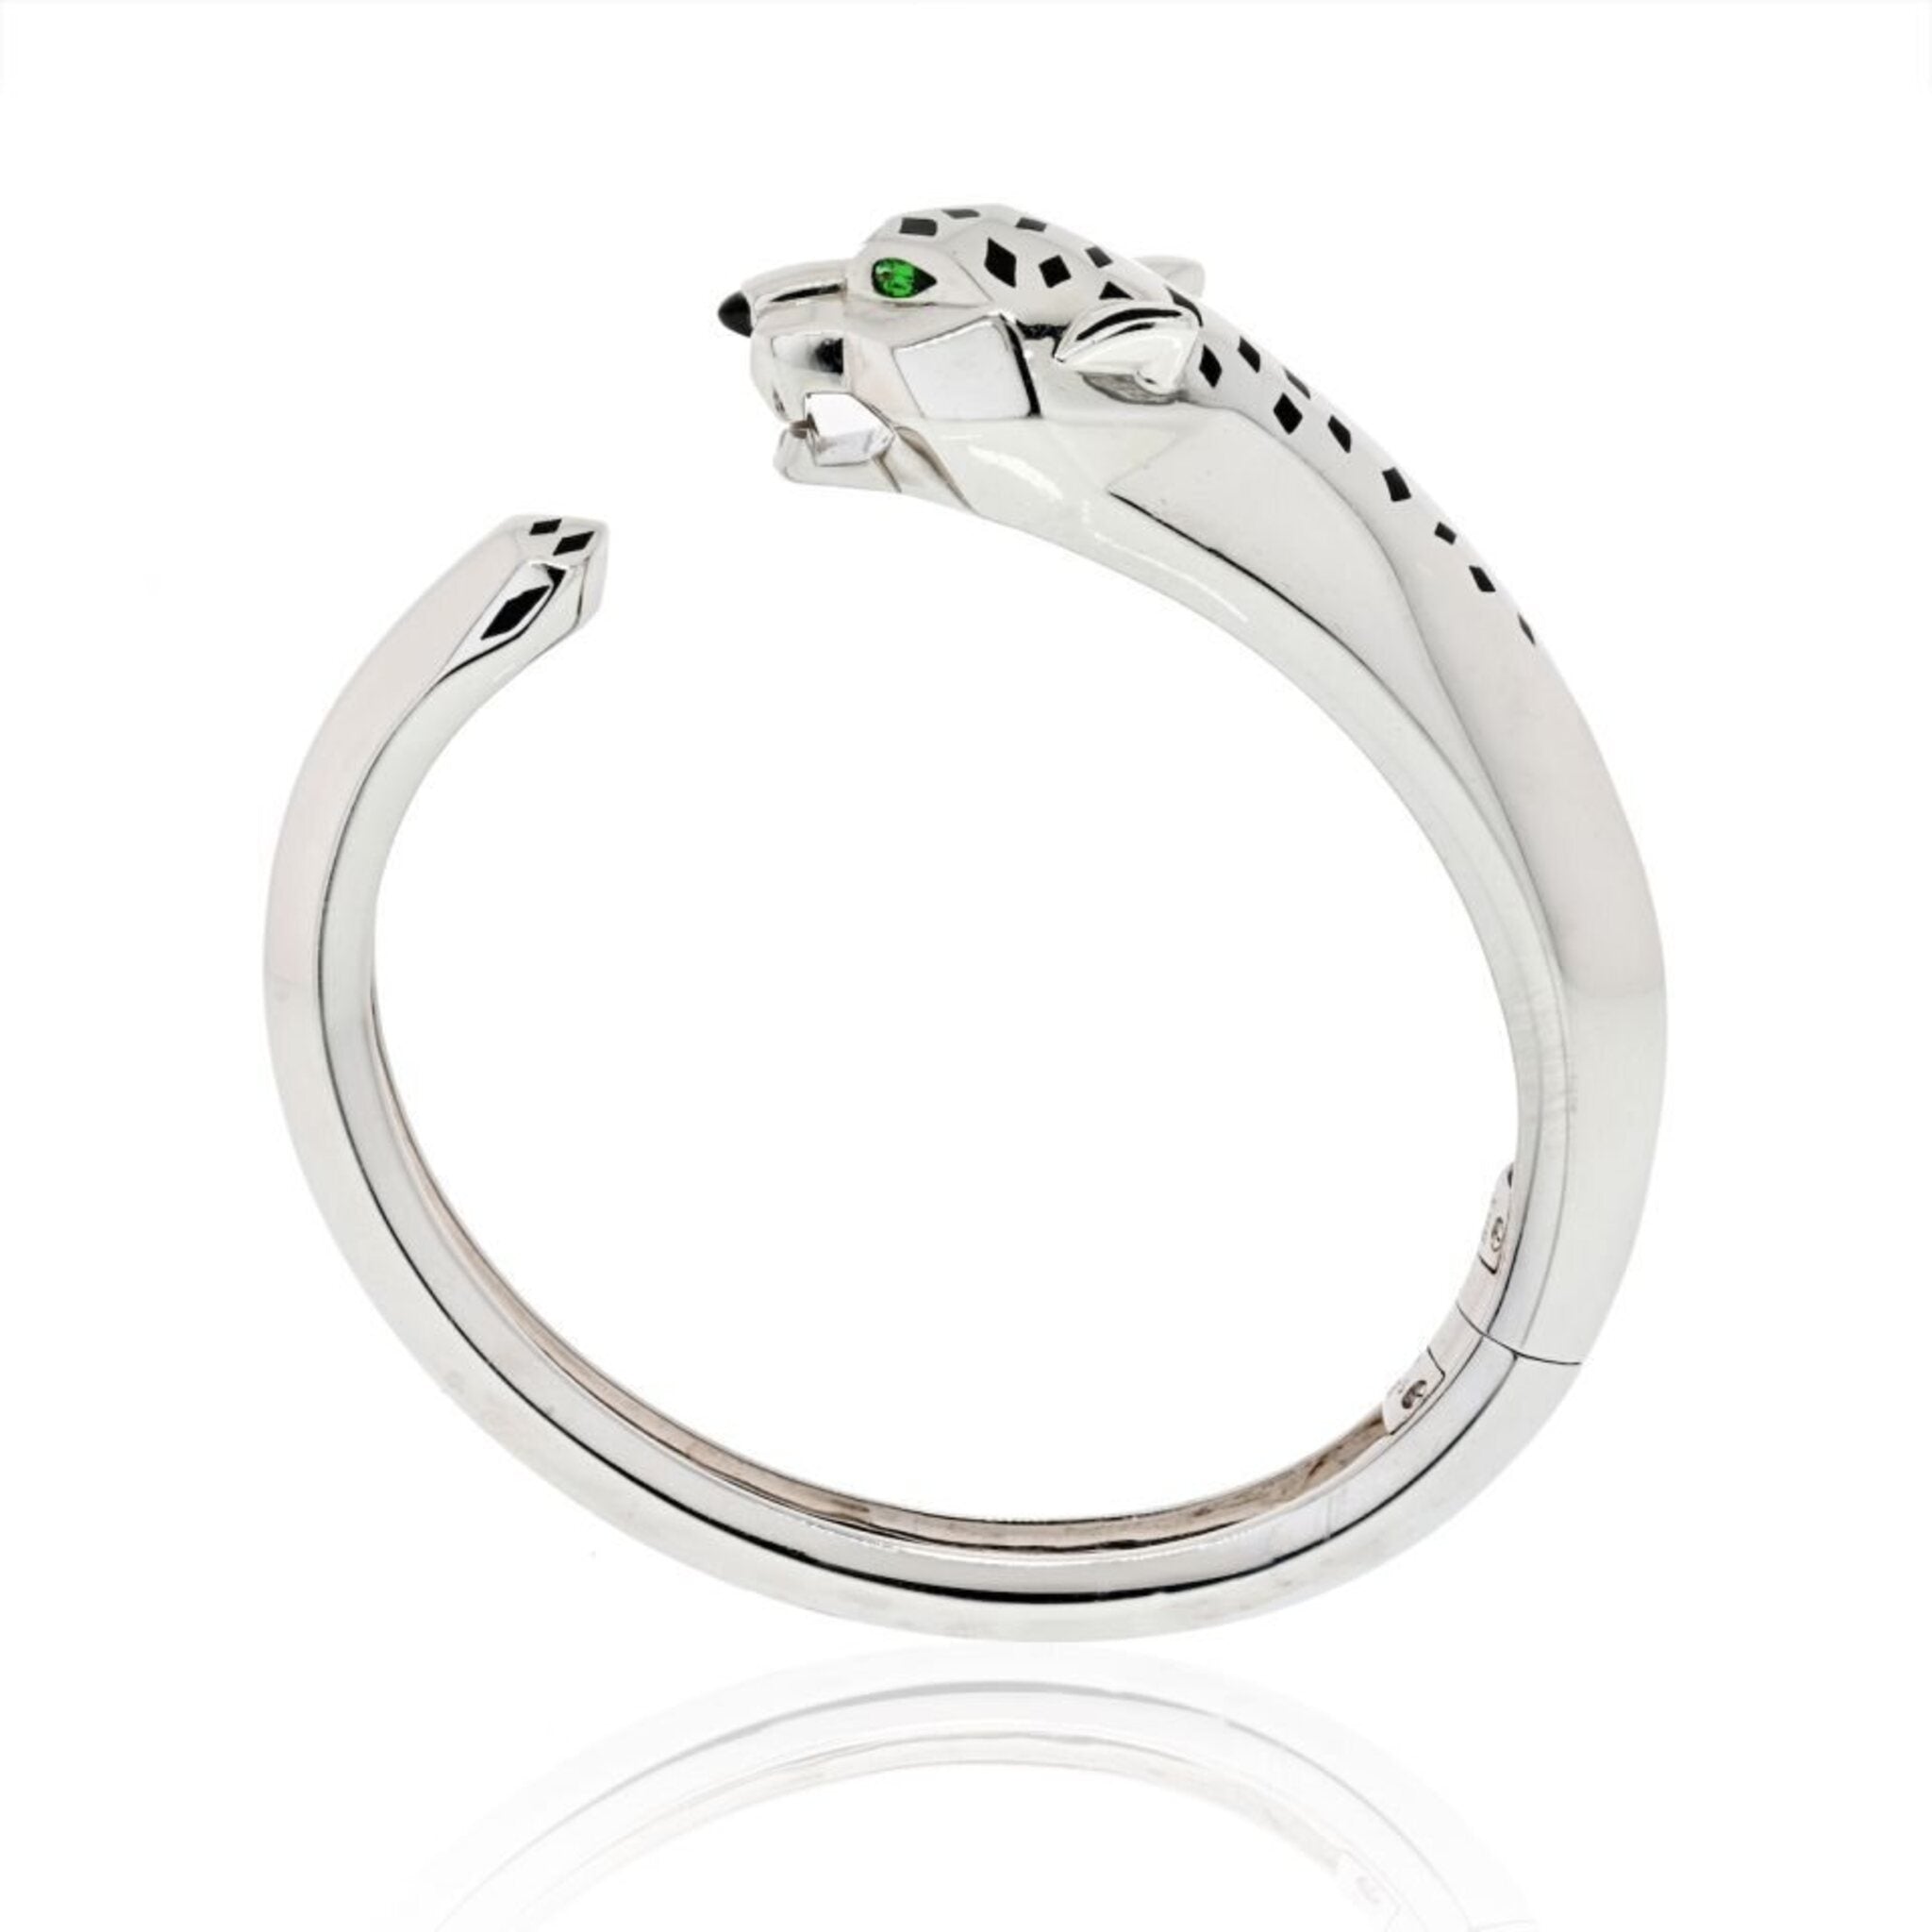 Buy Classy Men's Platinum Bracelet Online | ORRA